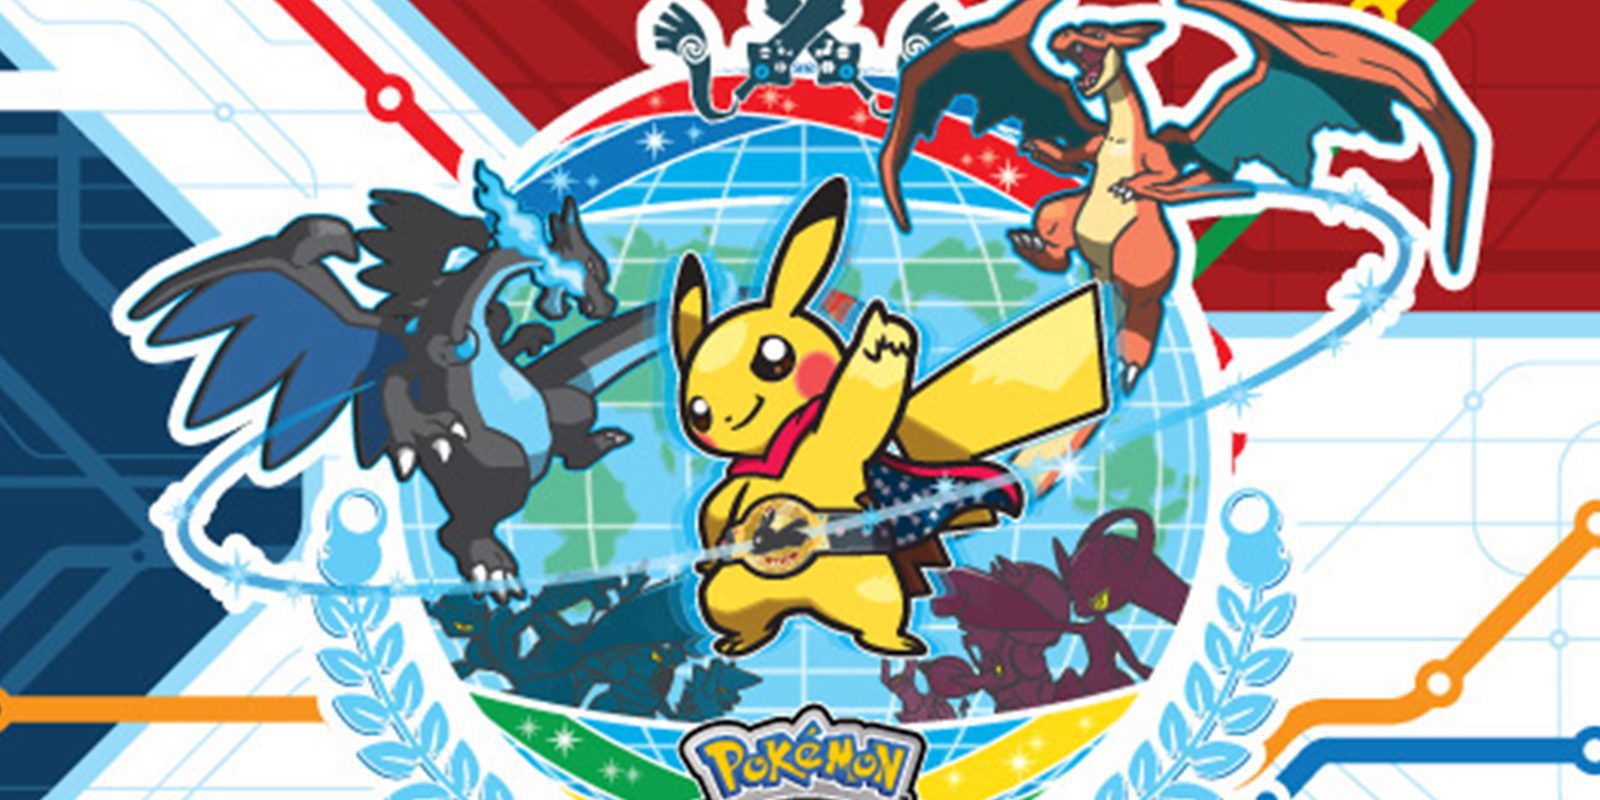 Pokémon eSport - Todos los detalles y horarios del Pokémon World Championships 2016